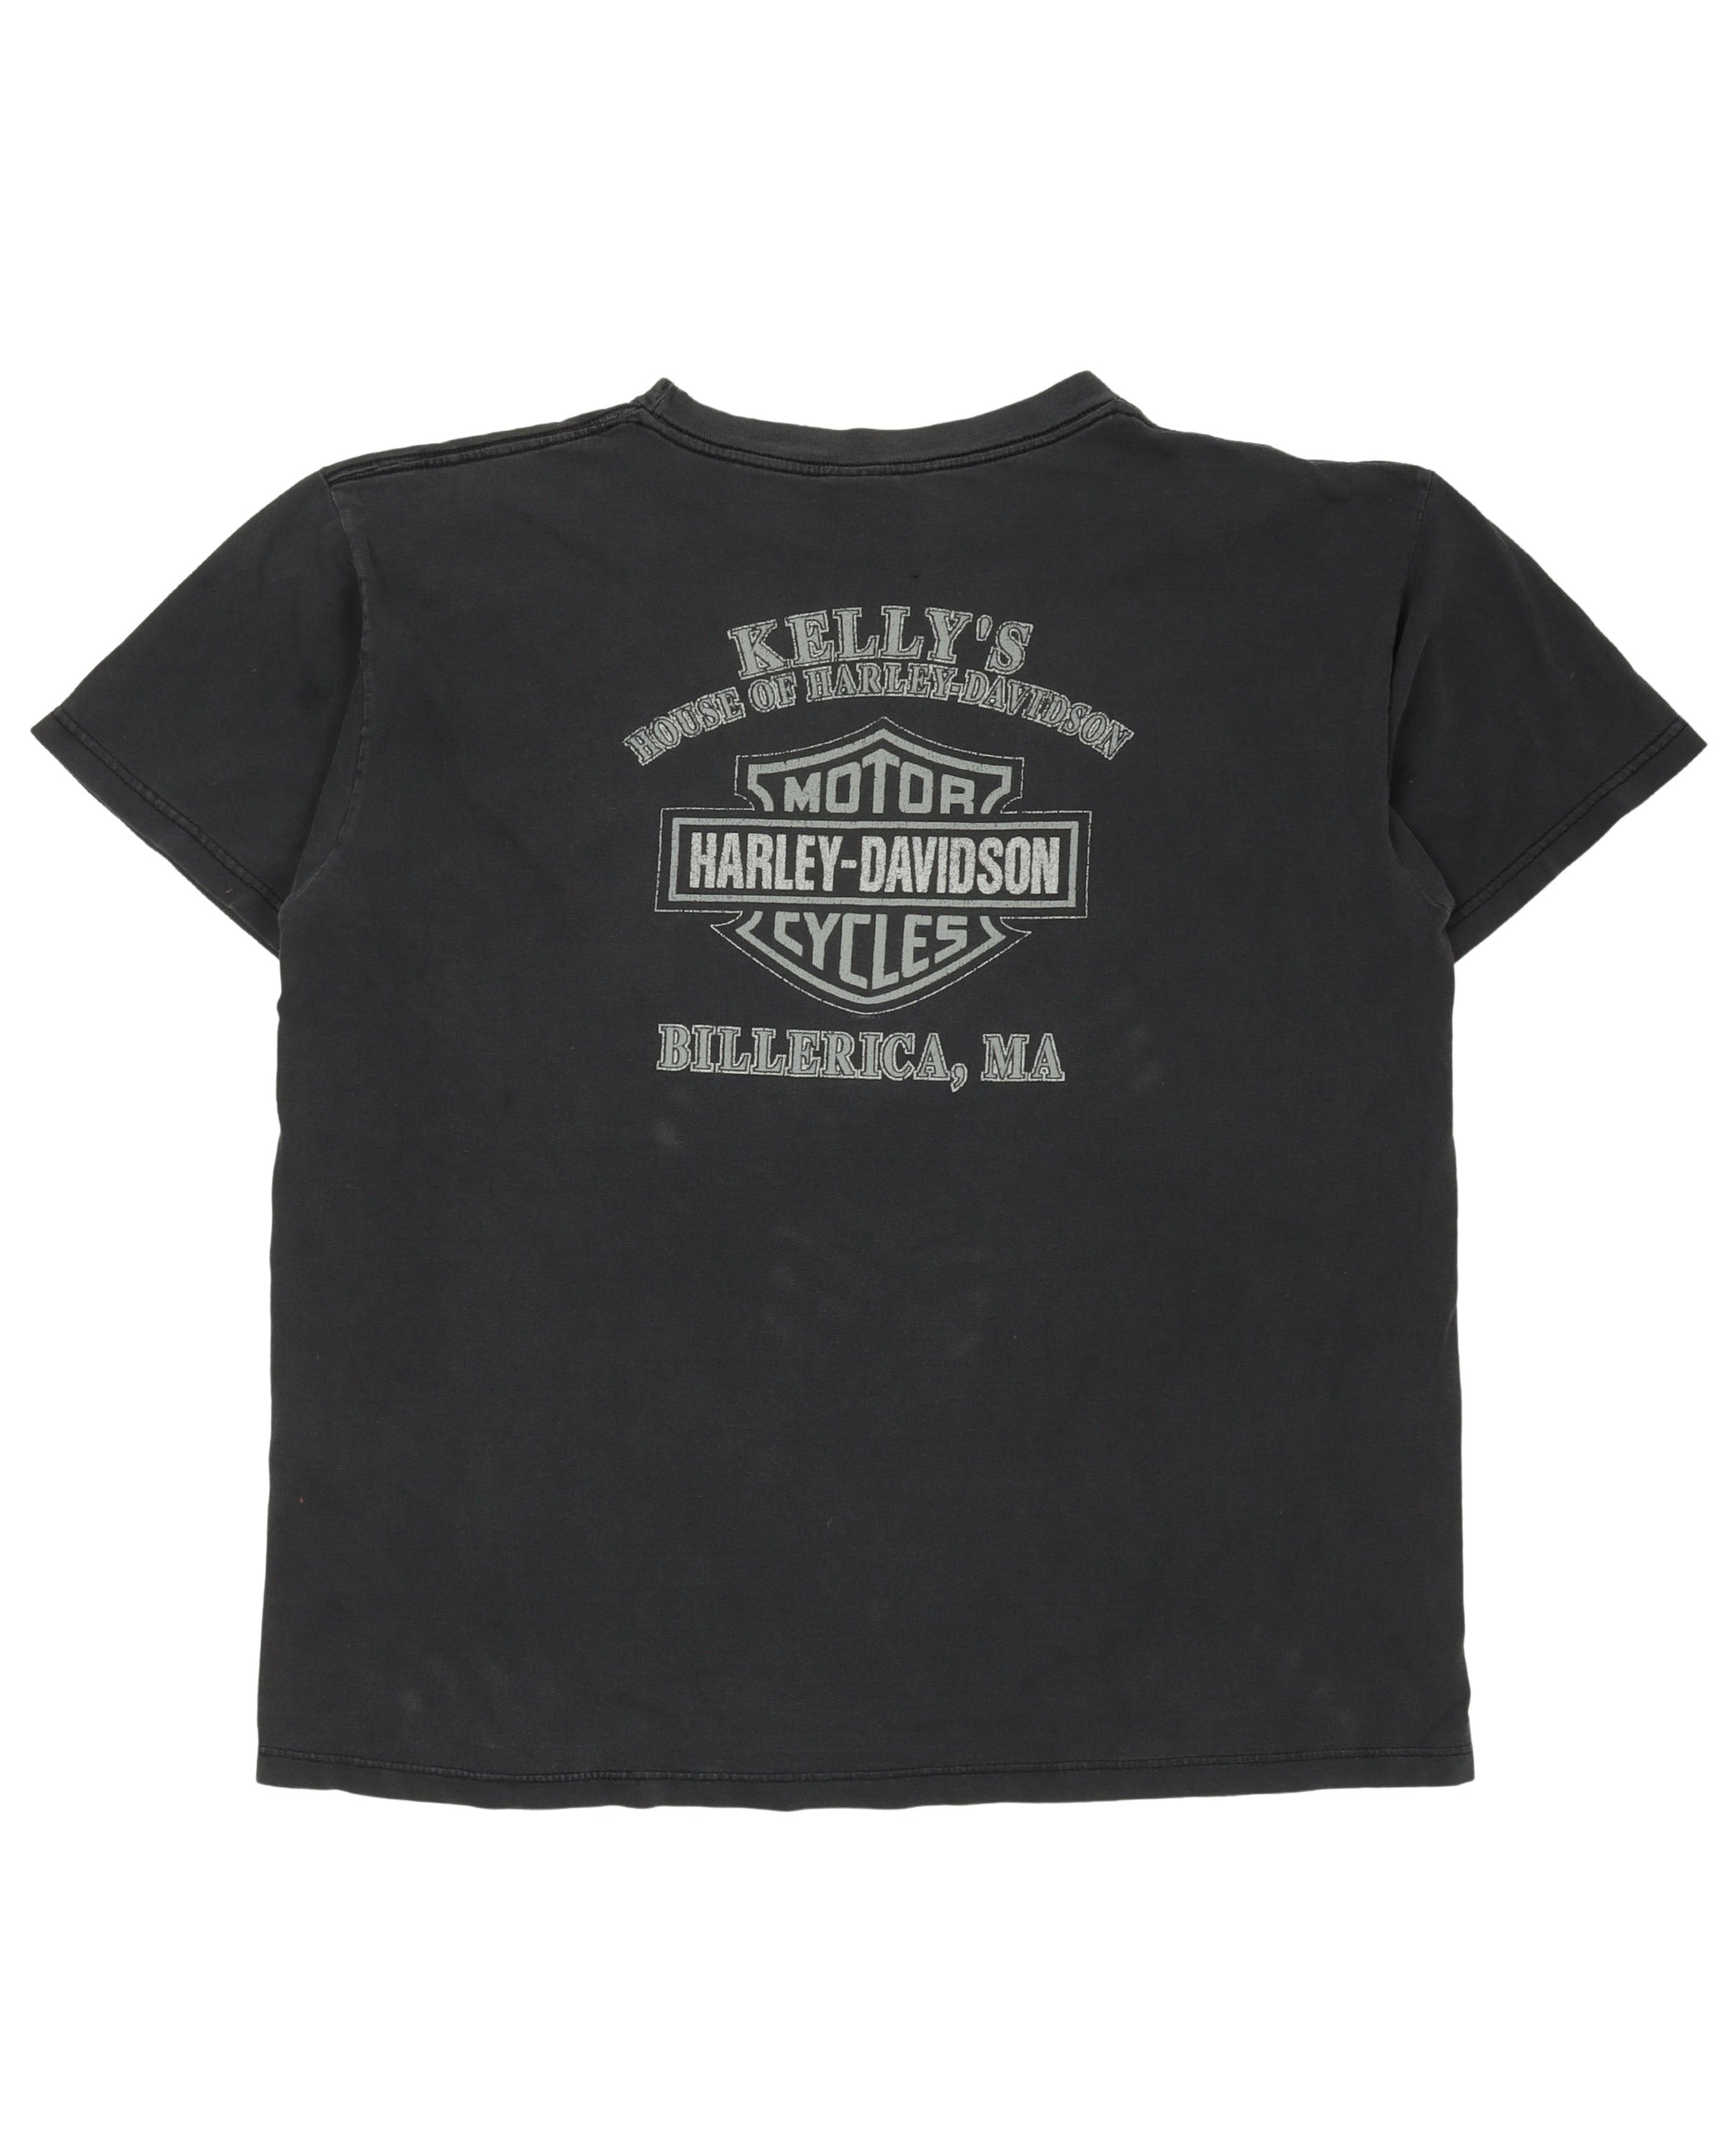 Harley Davidson Billerica, MA T-Shirt